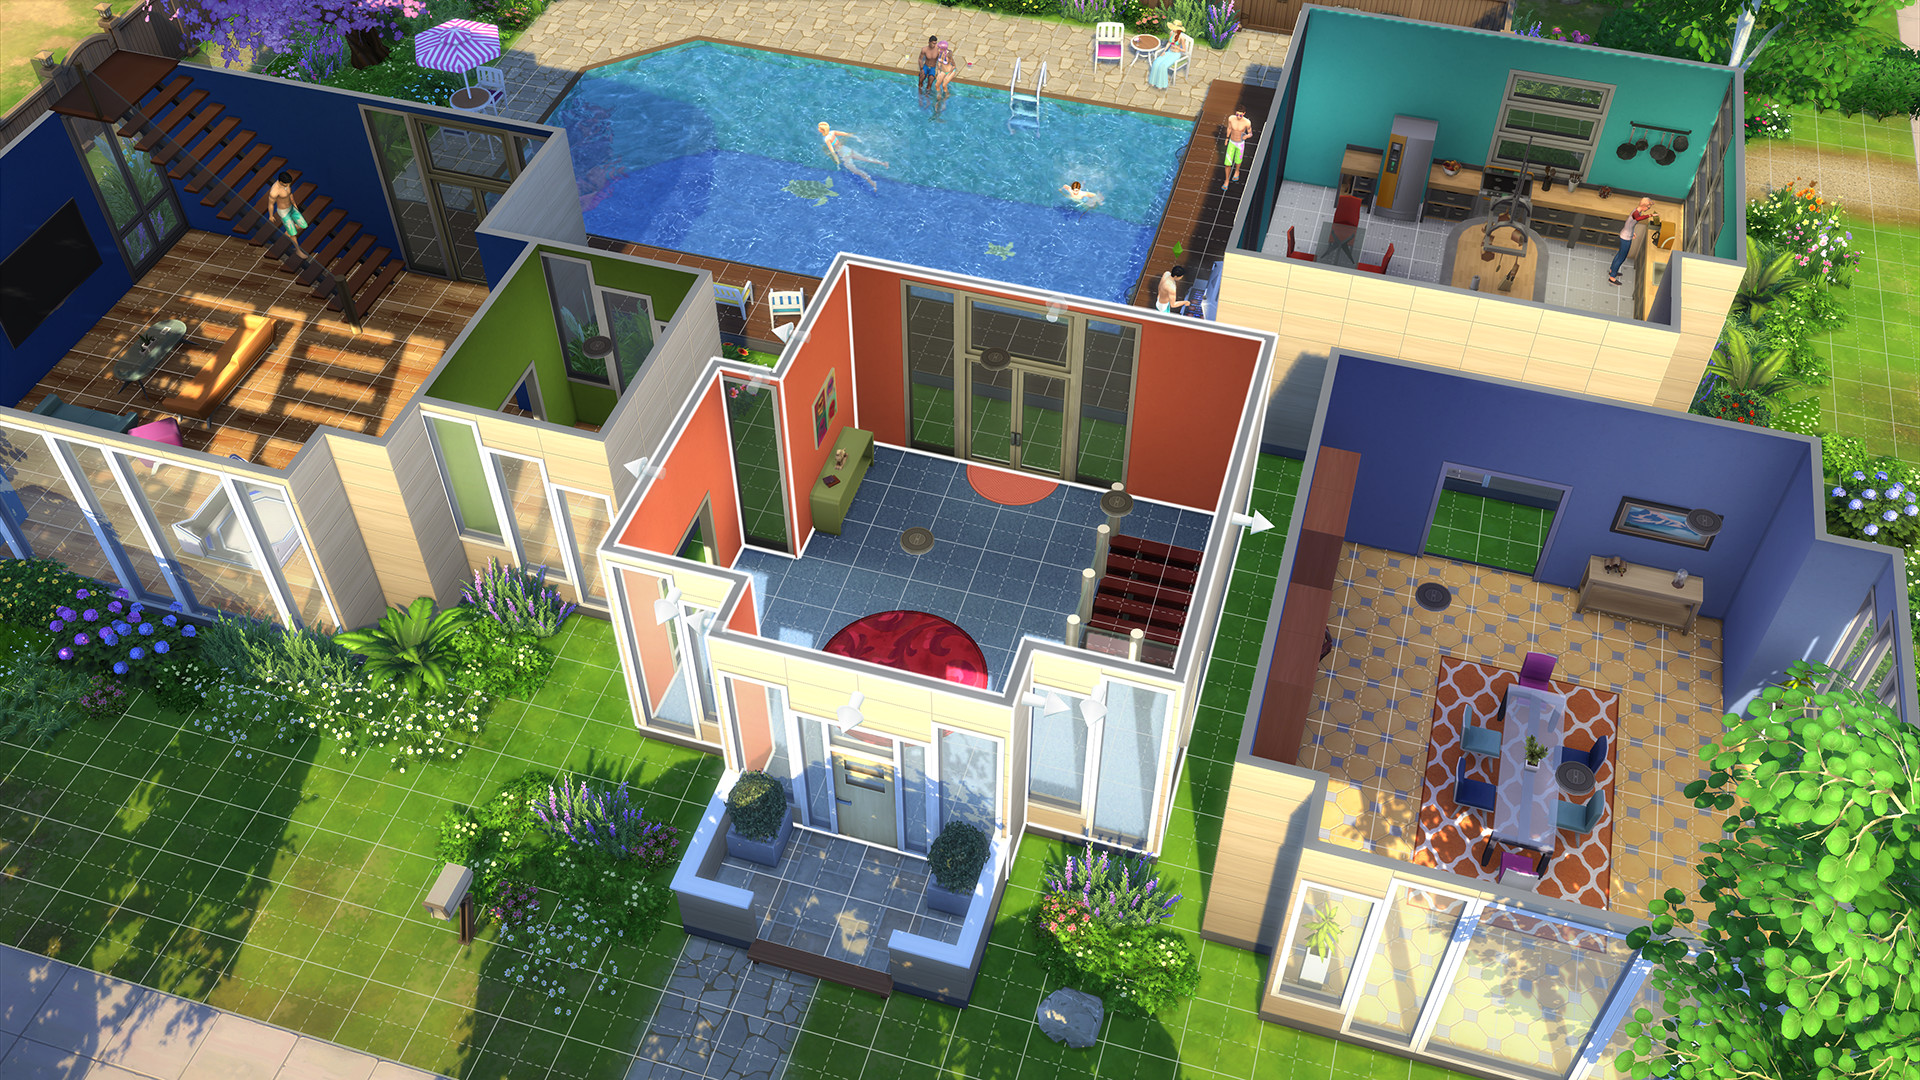 Como aumentar o tamanho de objetos em The Sims 4 – Tecnoblog